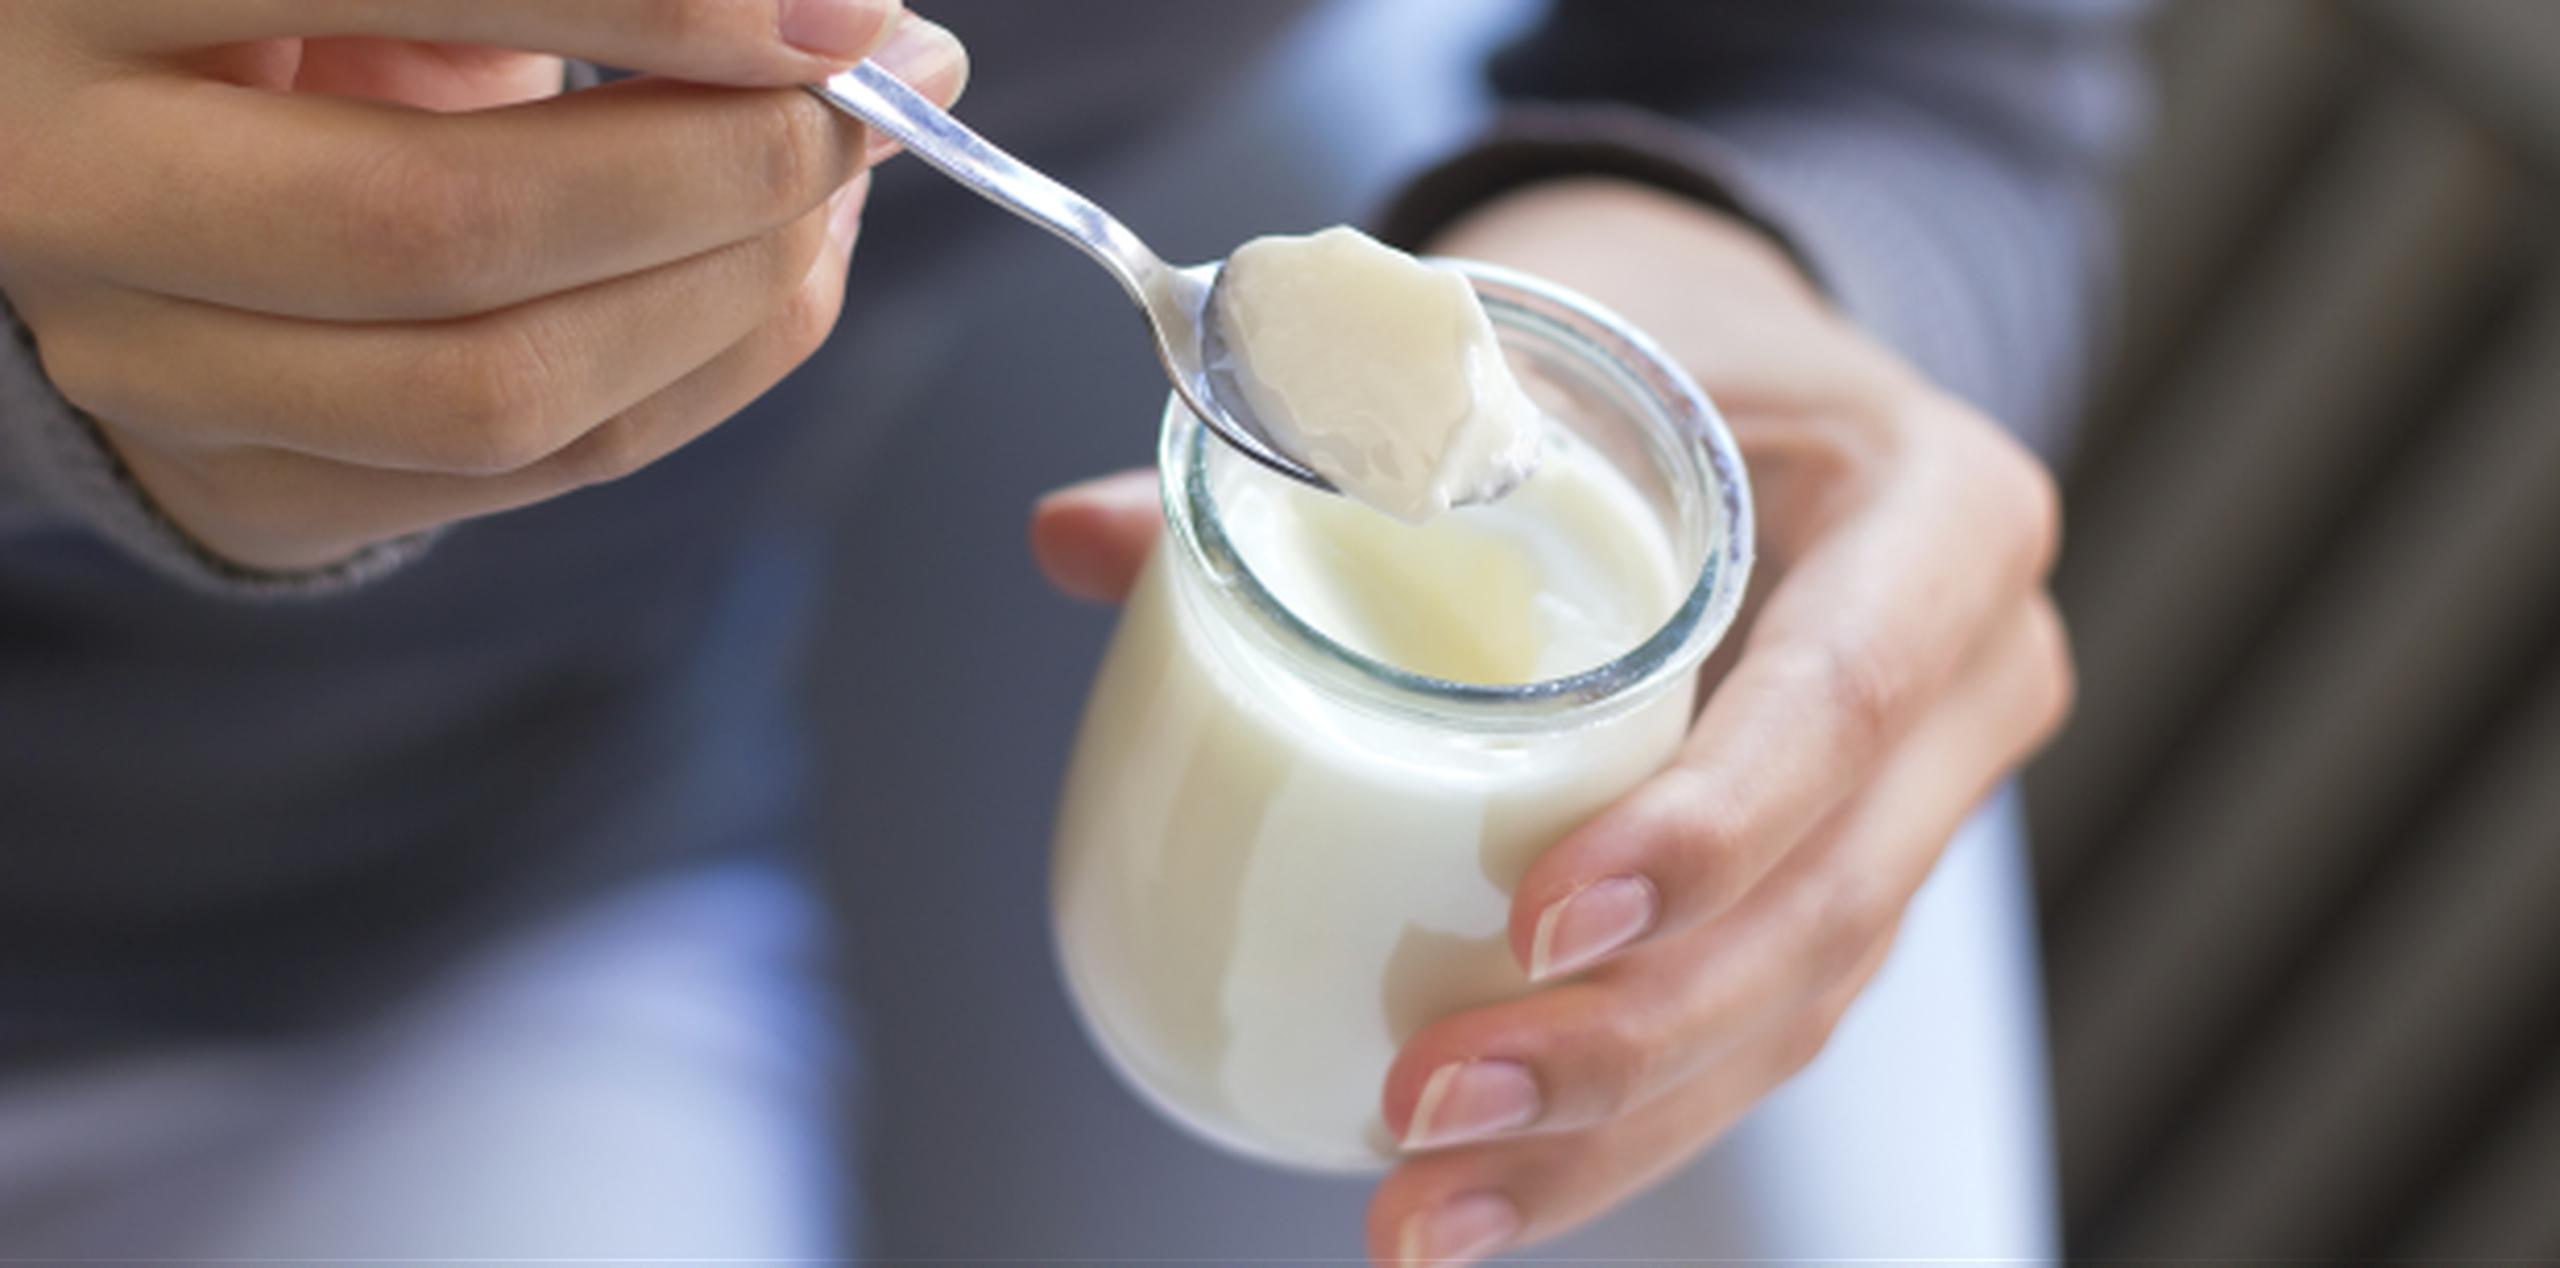 El yogur con probióticos mejora la flora bacteriana del estómago. (Archivo)